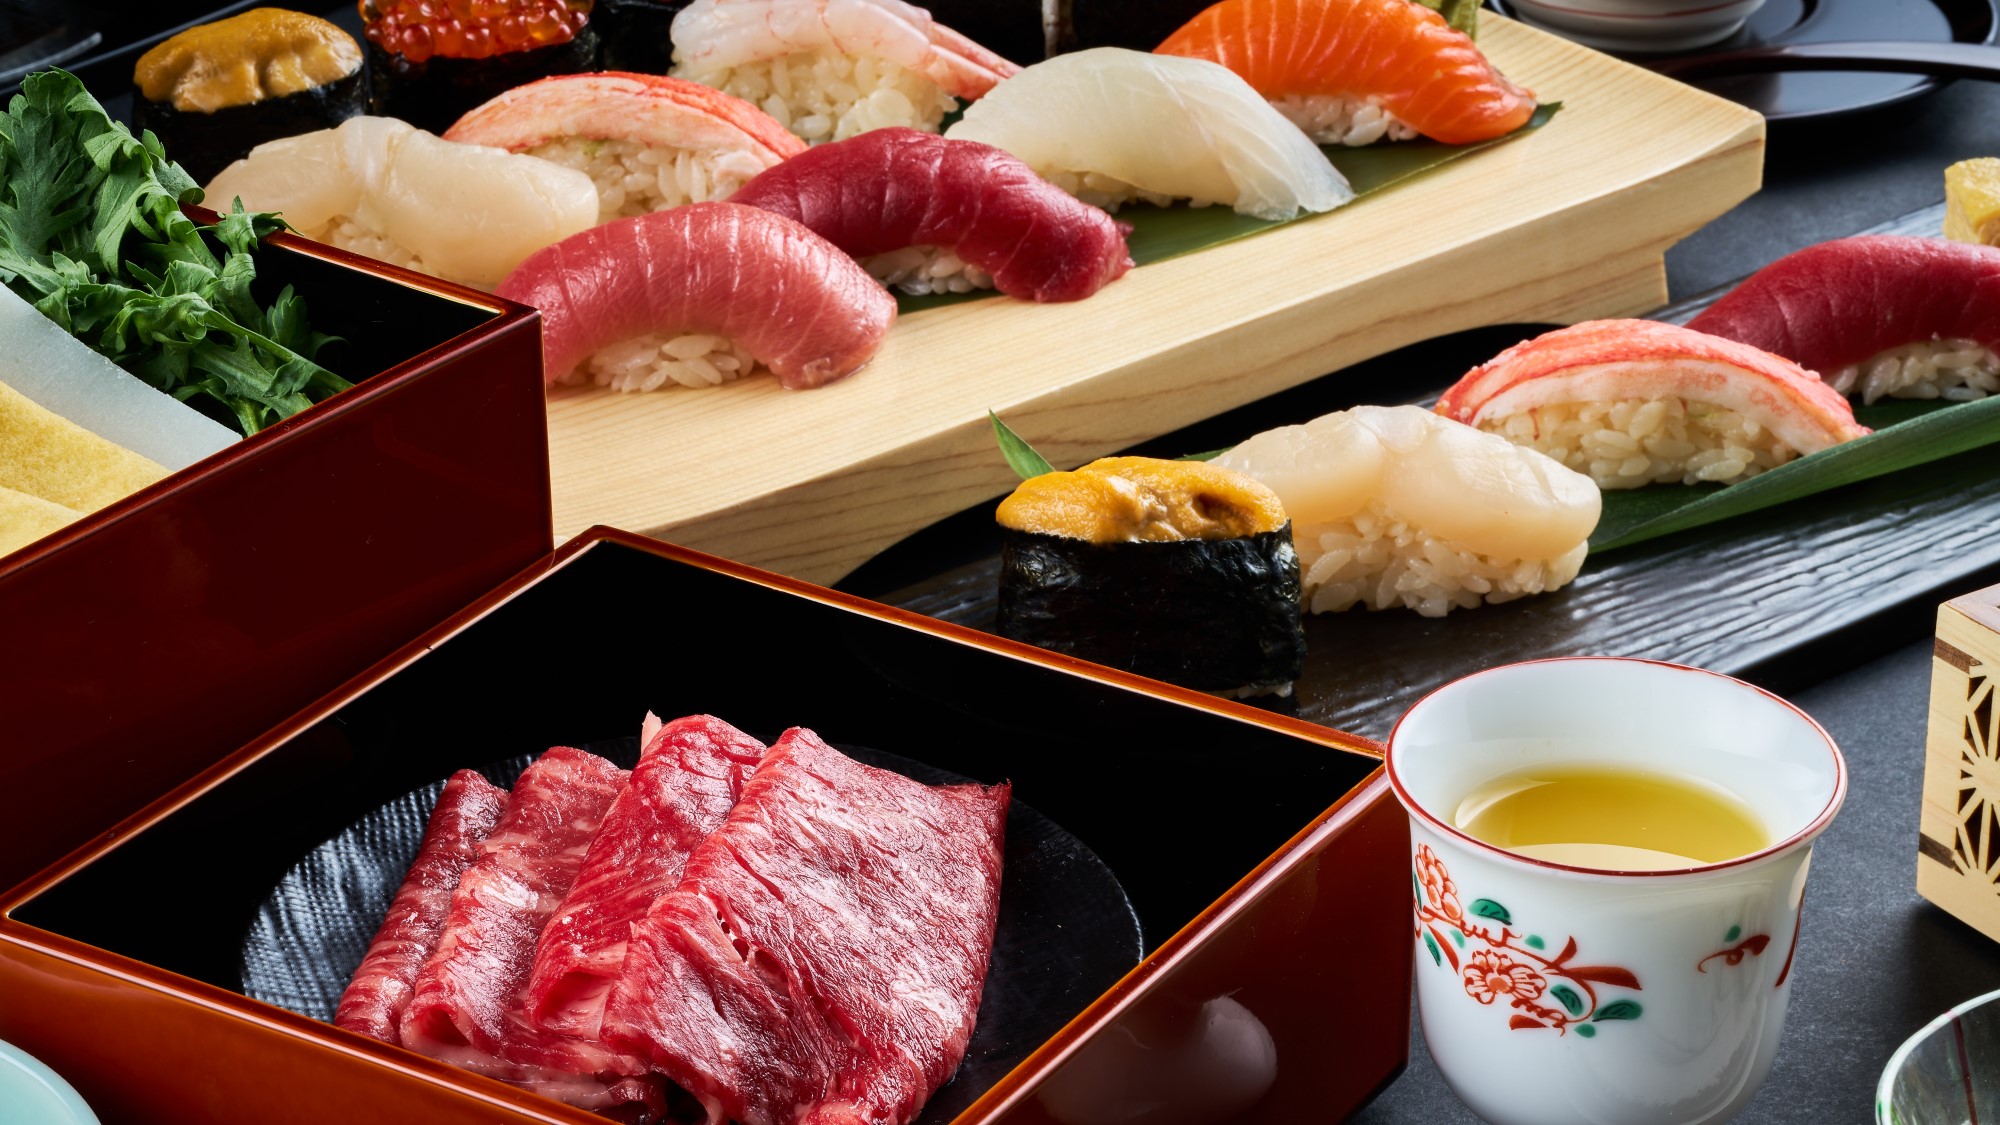 【ご夕食】しゃぶしゃぶのお肉は「北海道七飯町産」の牛ロースを使用しております。